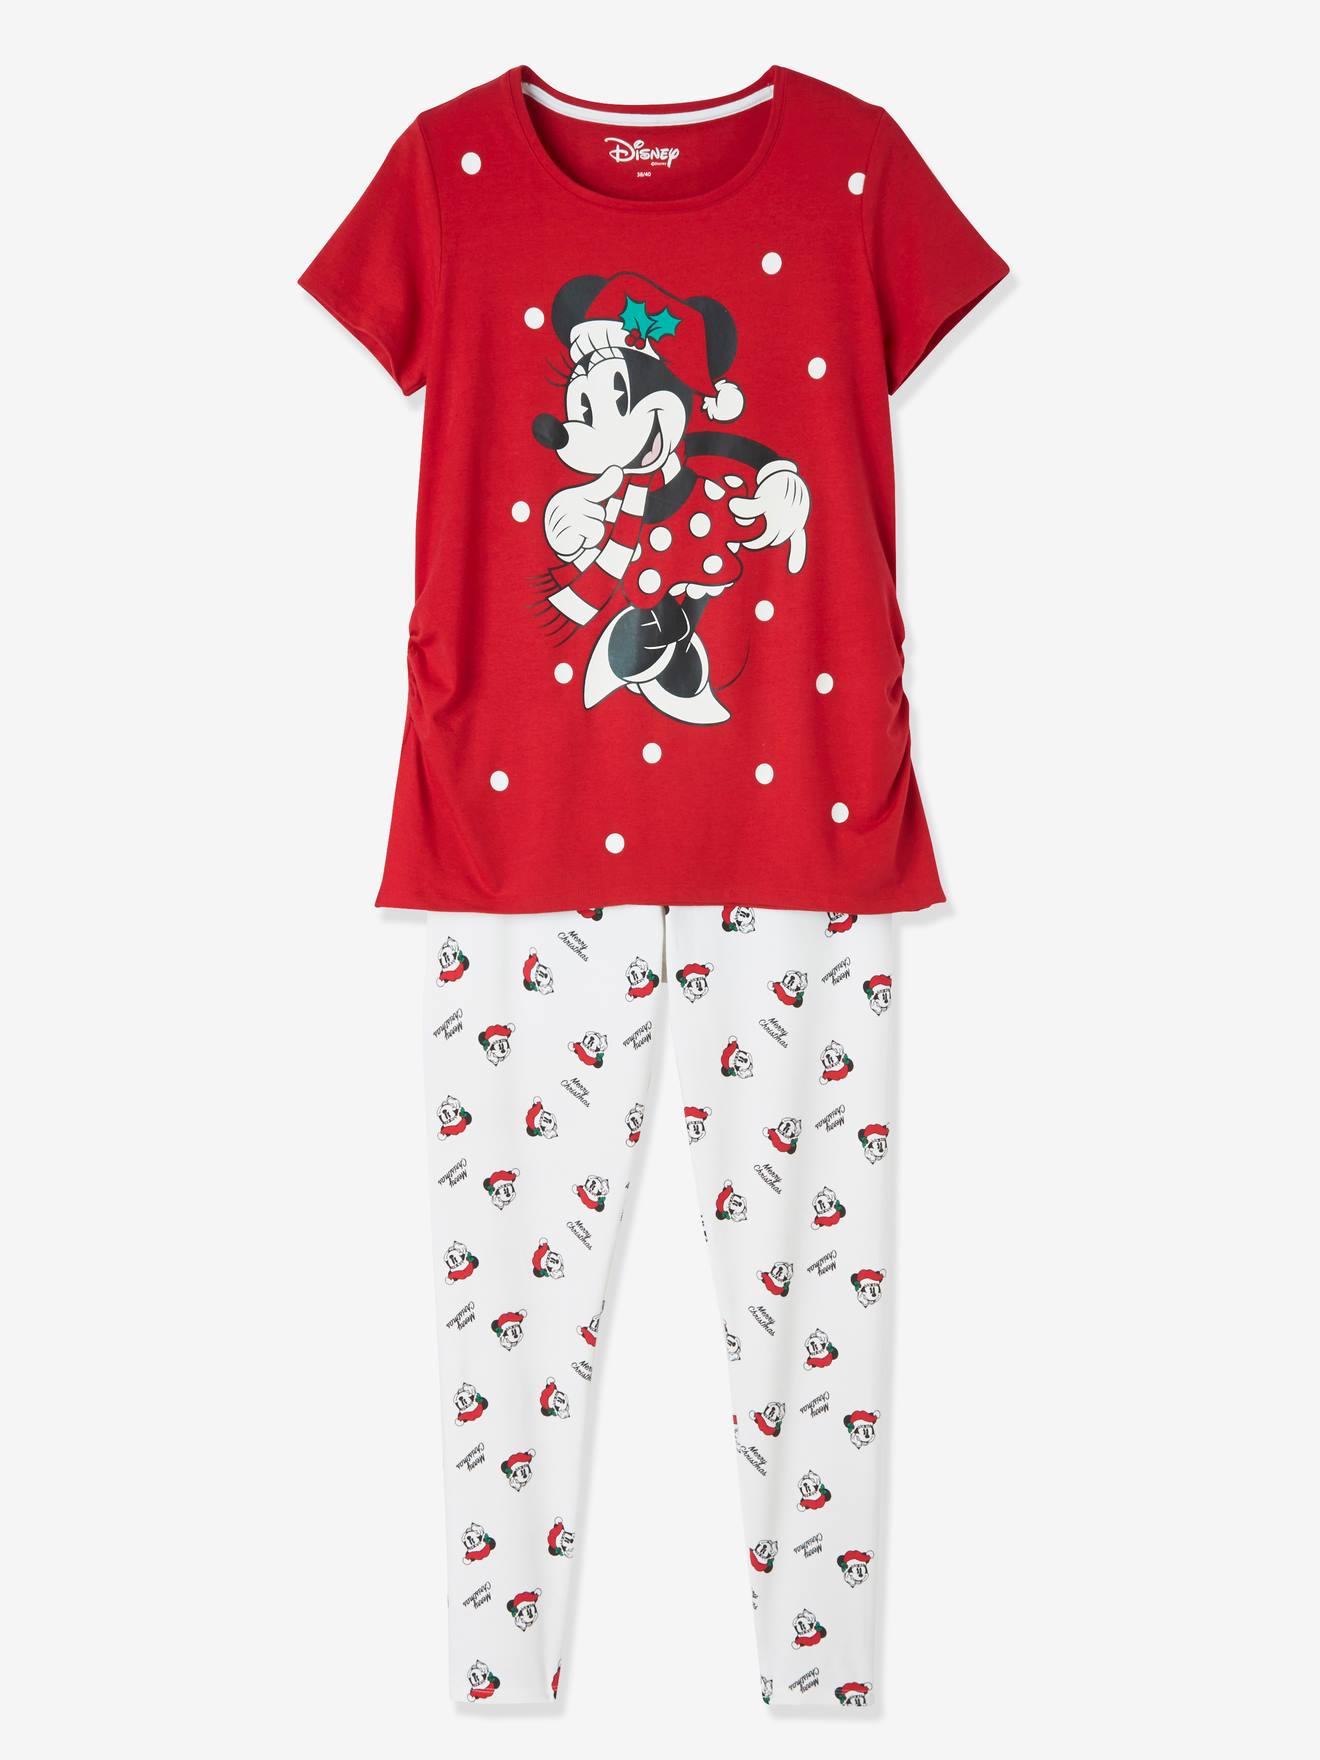 Umstandsschlafanzug Disney MINNIE MAUS von Minnie Maus